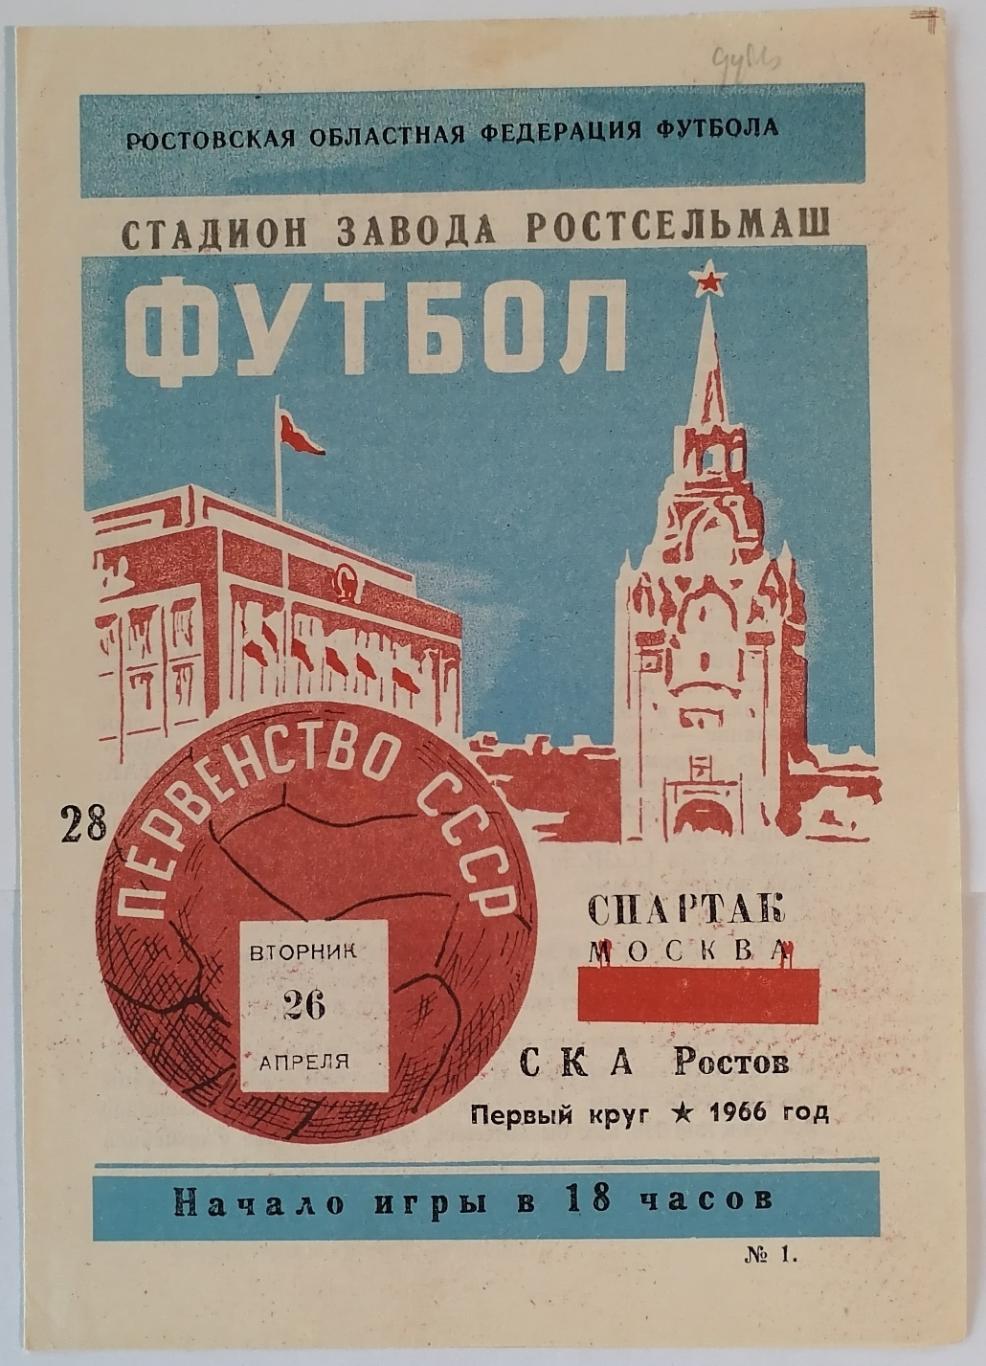 СКА РОСТОВ-НА-ДОНУ - СПАРТАК МОСКВА 1966 официальная программа